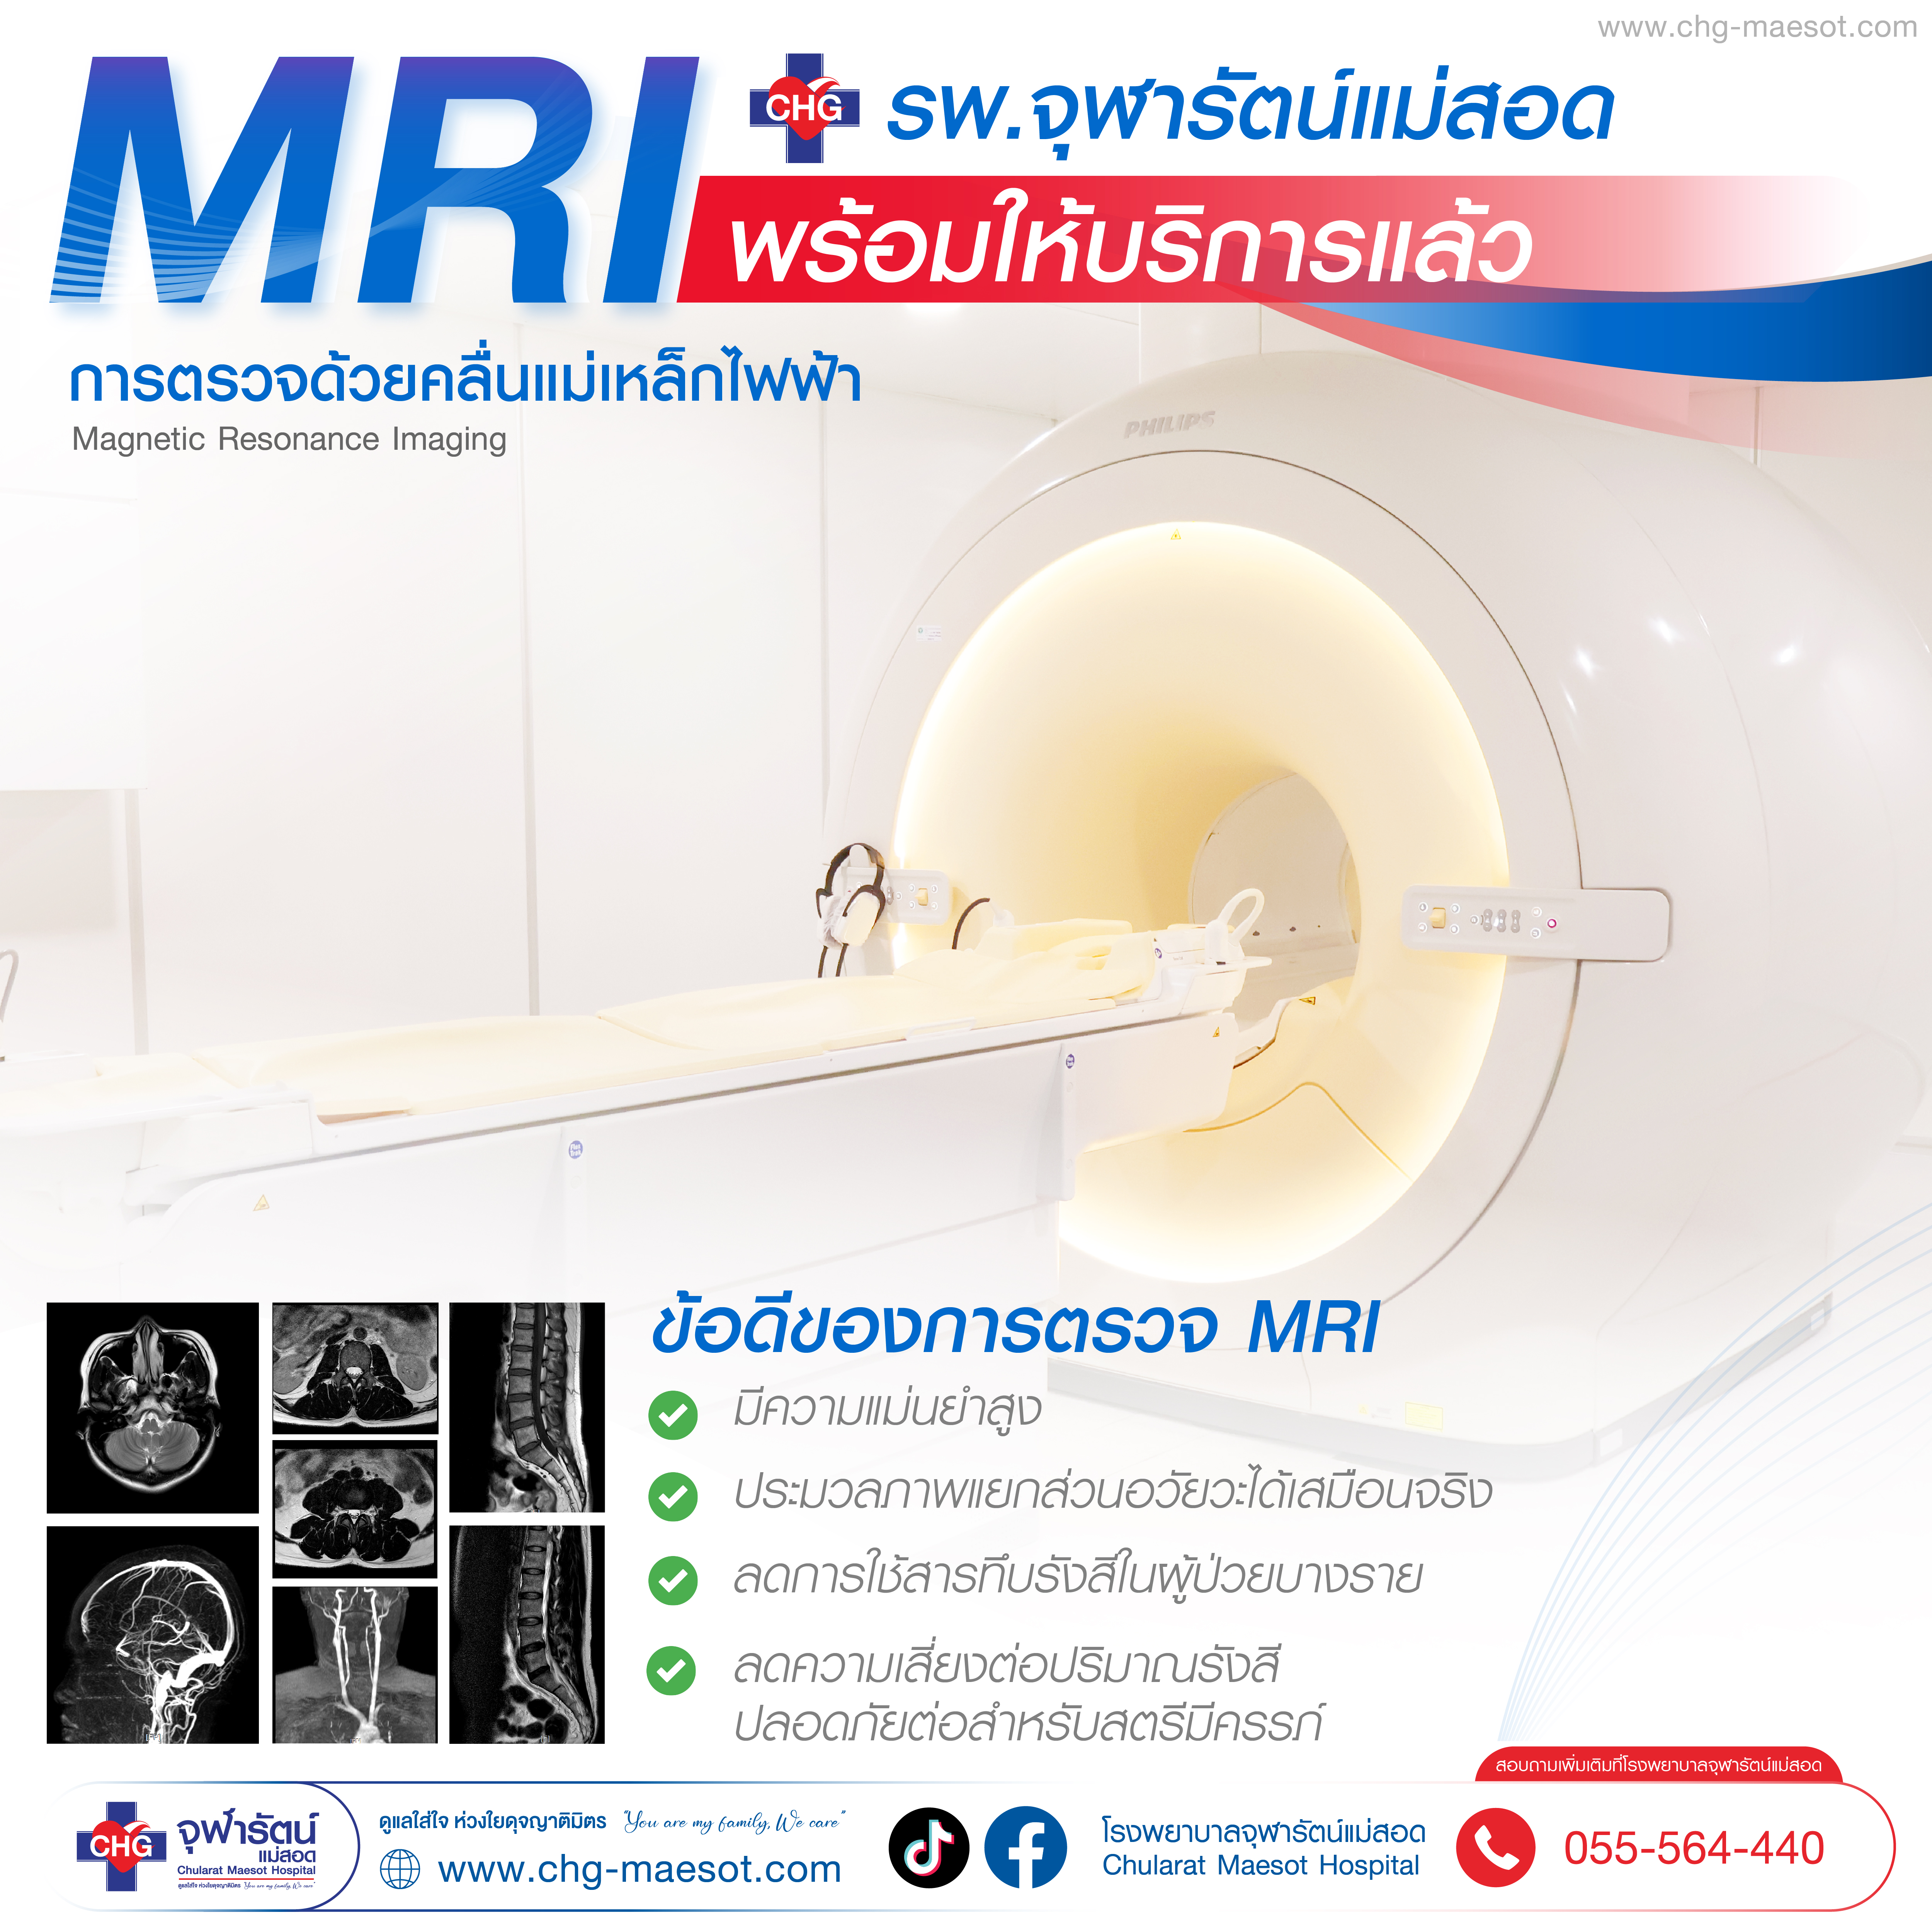 ศูนย์ เอ็ม อาร์ ไอ (MRI) โรงพยาบาลจุฬารัตน์แม่สอด - คลินิกและศูนย์เฉพาะทาง